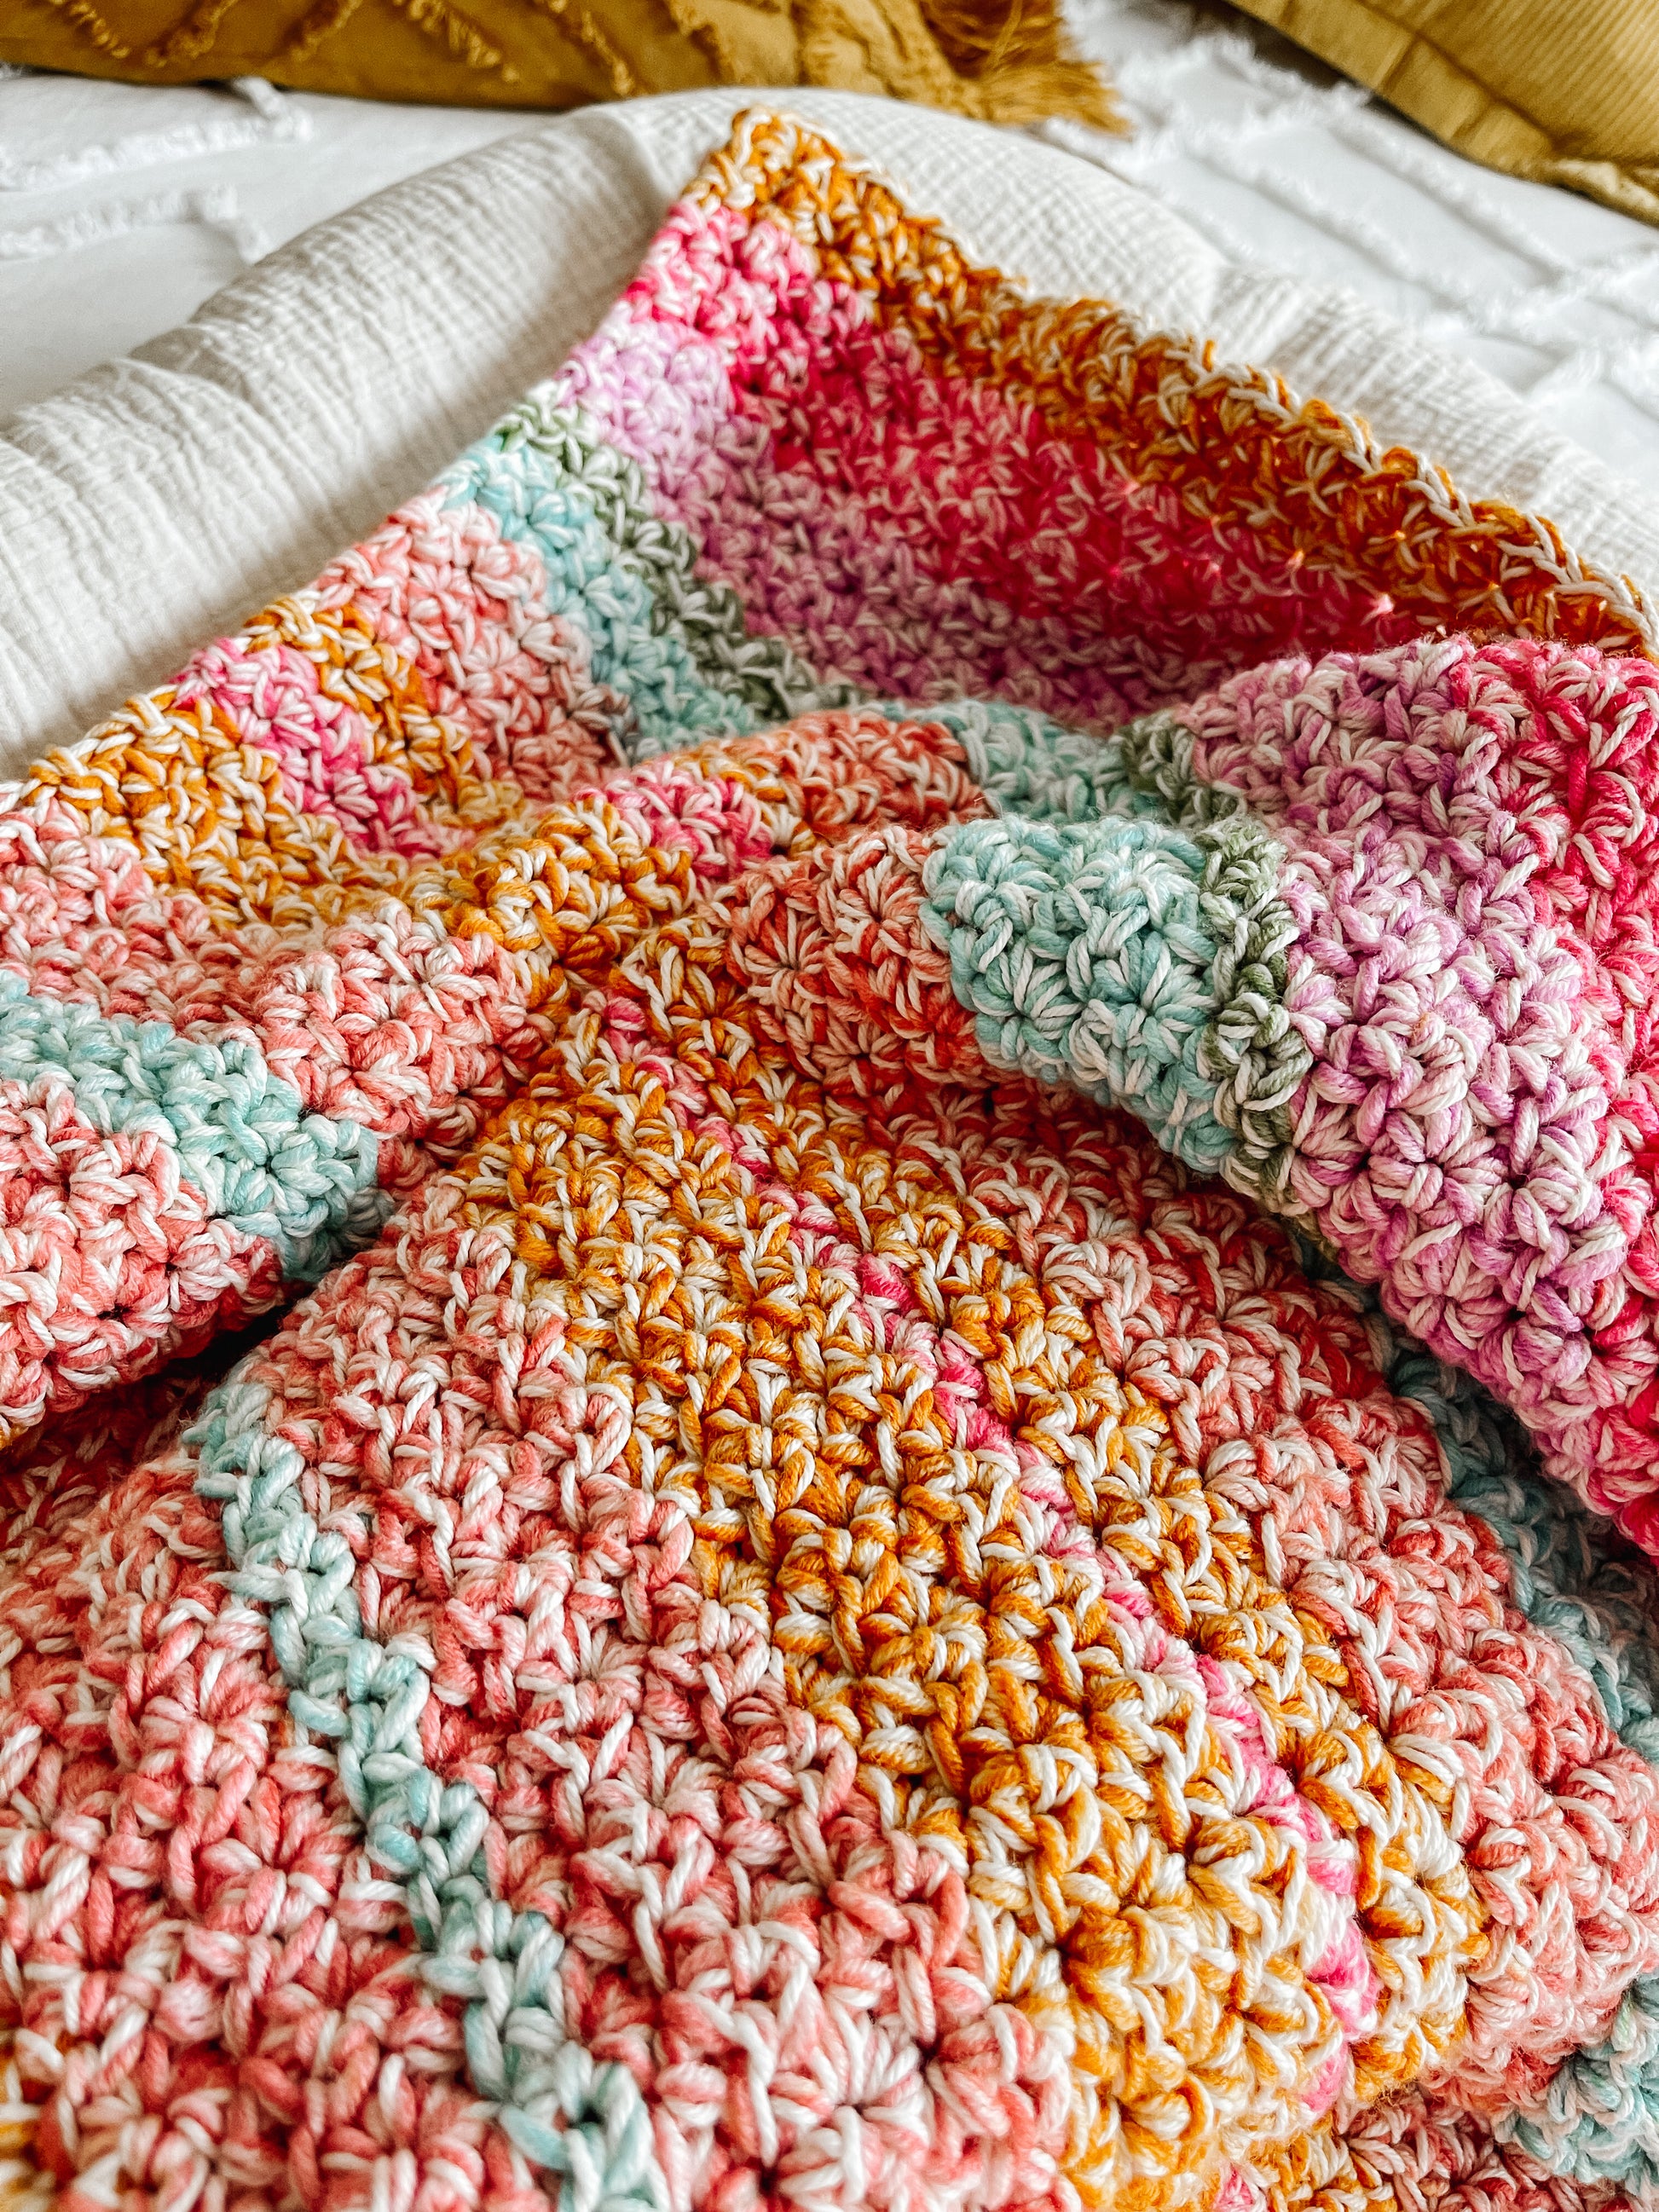 Beginner friendly Crochet Blanket – Allegra Blanket - CJ Design Blog